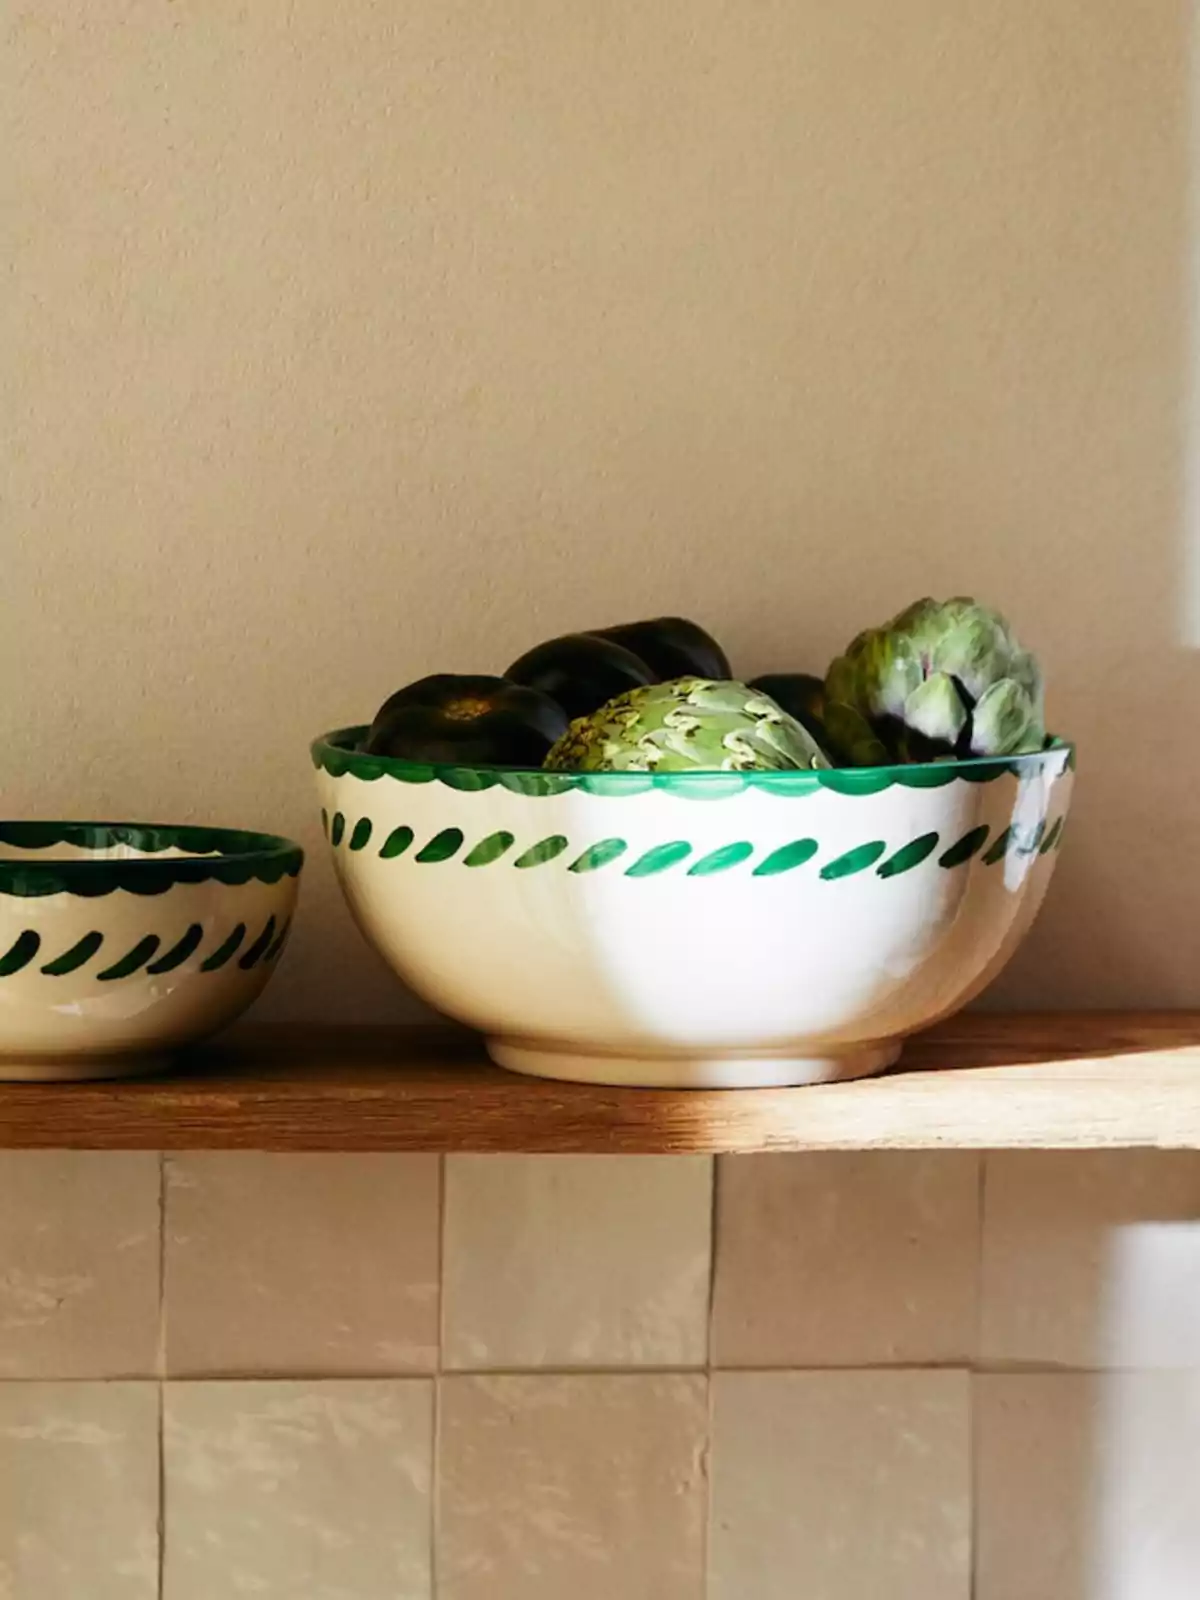 Un tazón de cerámica blanca con un borde decorativo verde, lleno de alcachofas y berenjenas, colocado sobre un estante de madera junto a otro tazón más pequeño con un diseño similar.